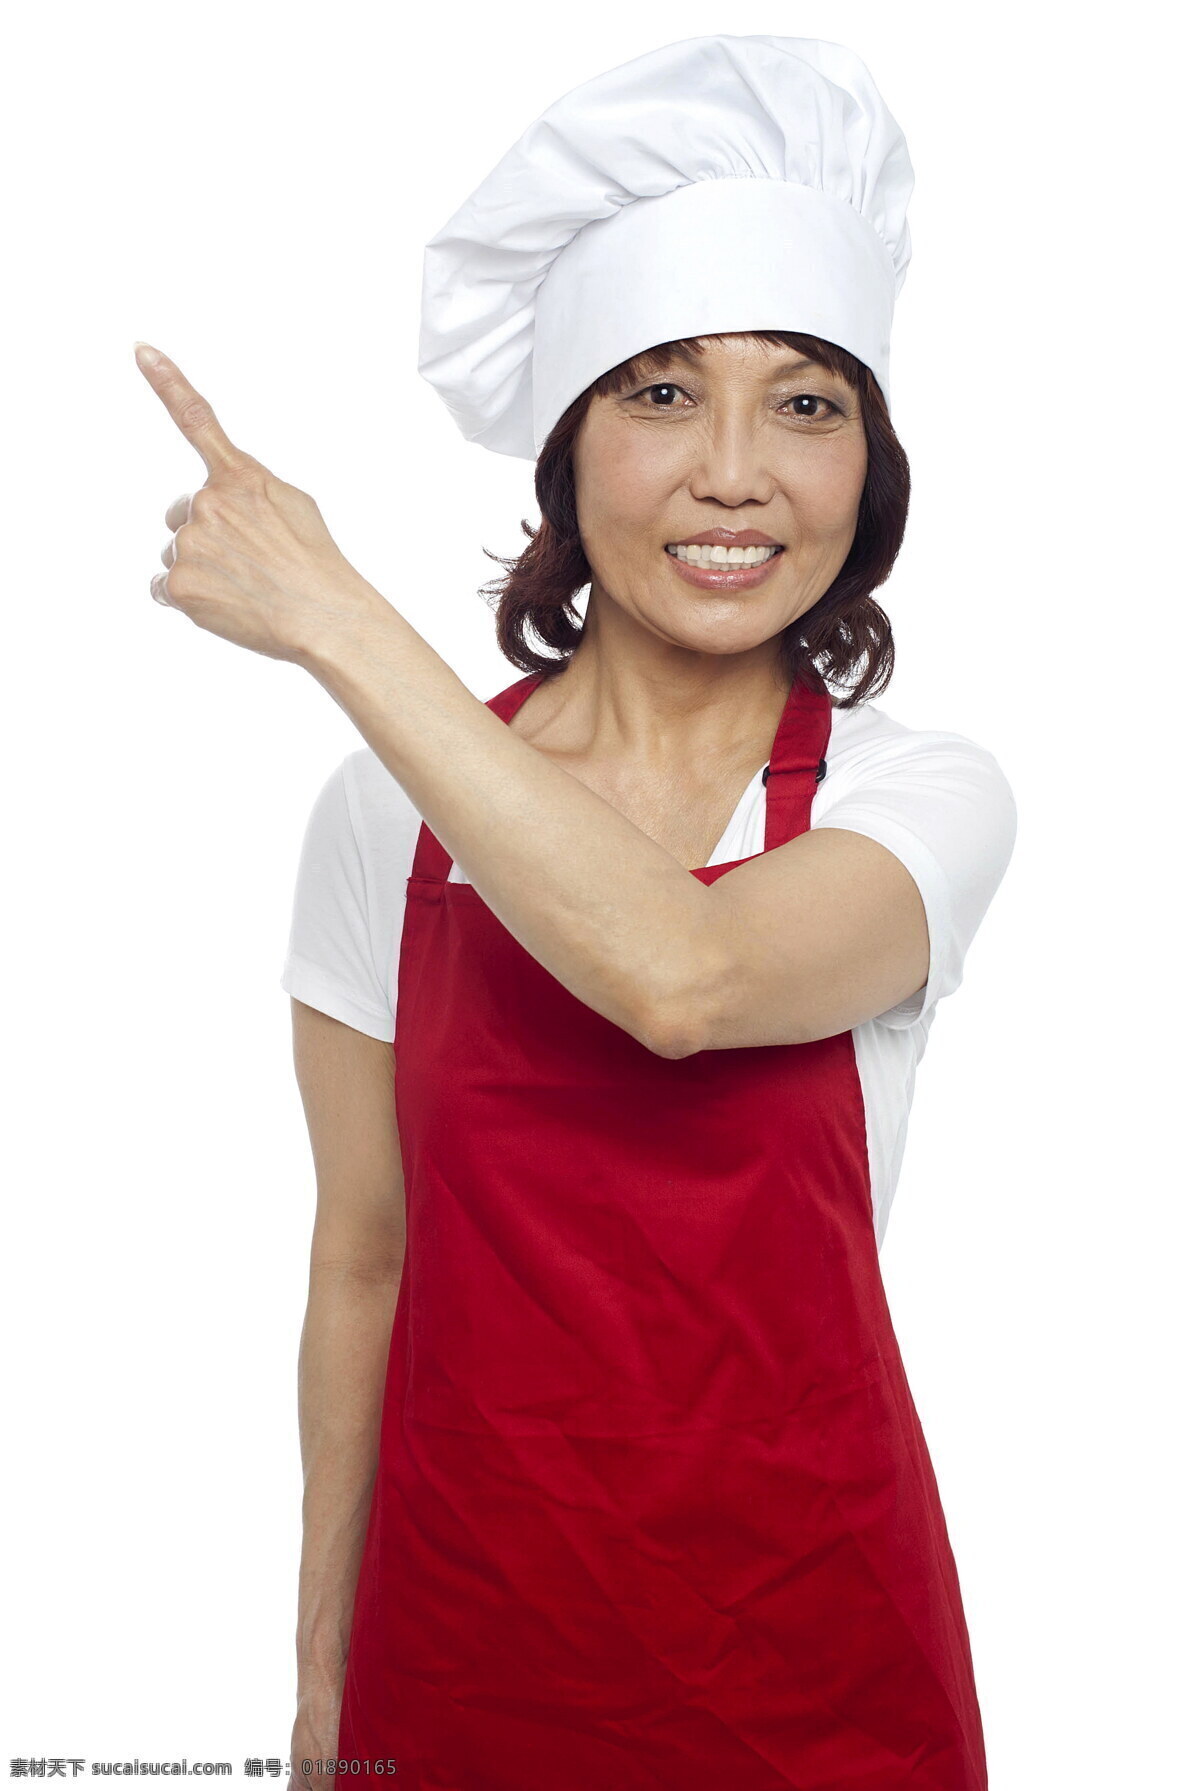 伸出 一根 手指 女 厨师 微笑 女厨师 红色围裙 白色帽子 商务人士 人物图片